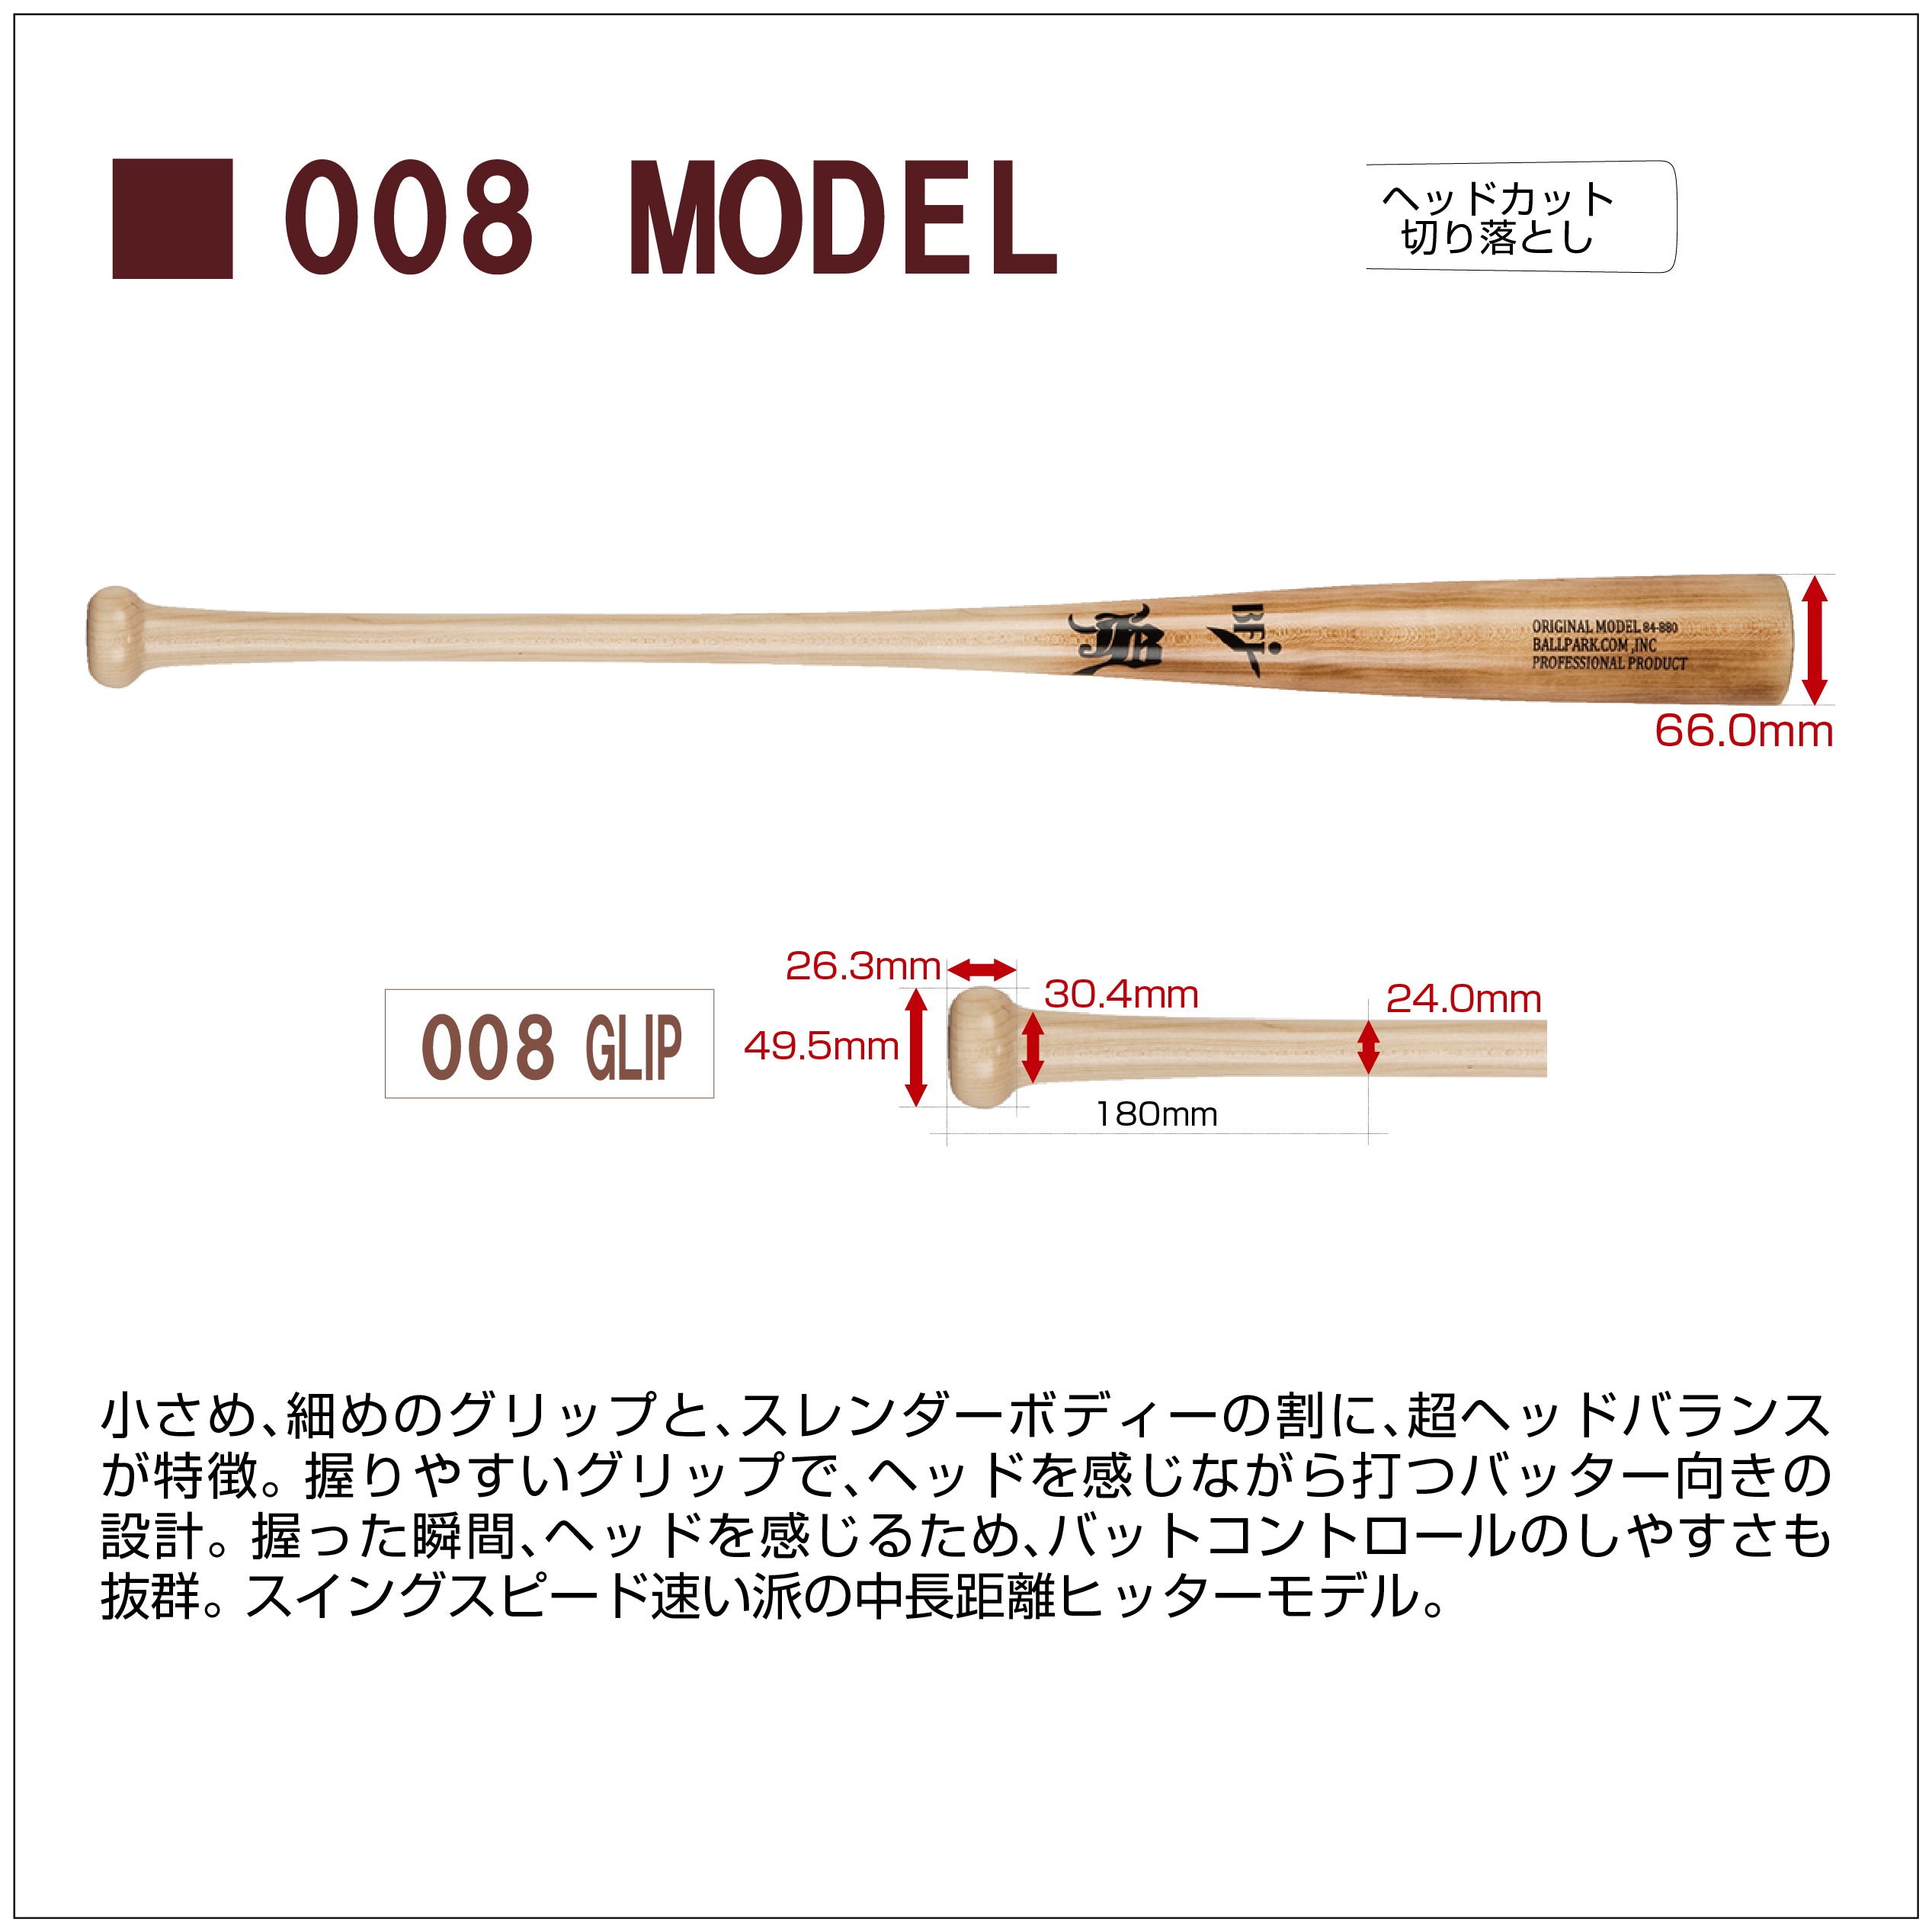 84cm】和牛JBバット/北米産メイプル/硬式木製/BFJマーク入り/20モデル